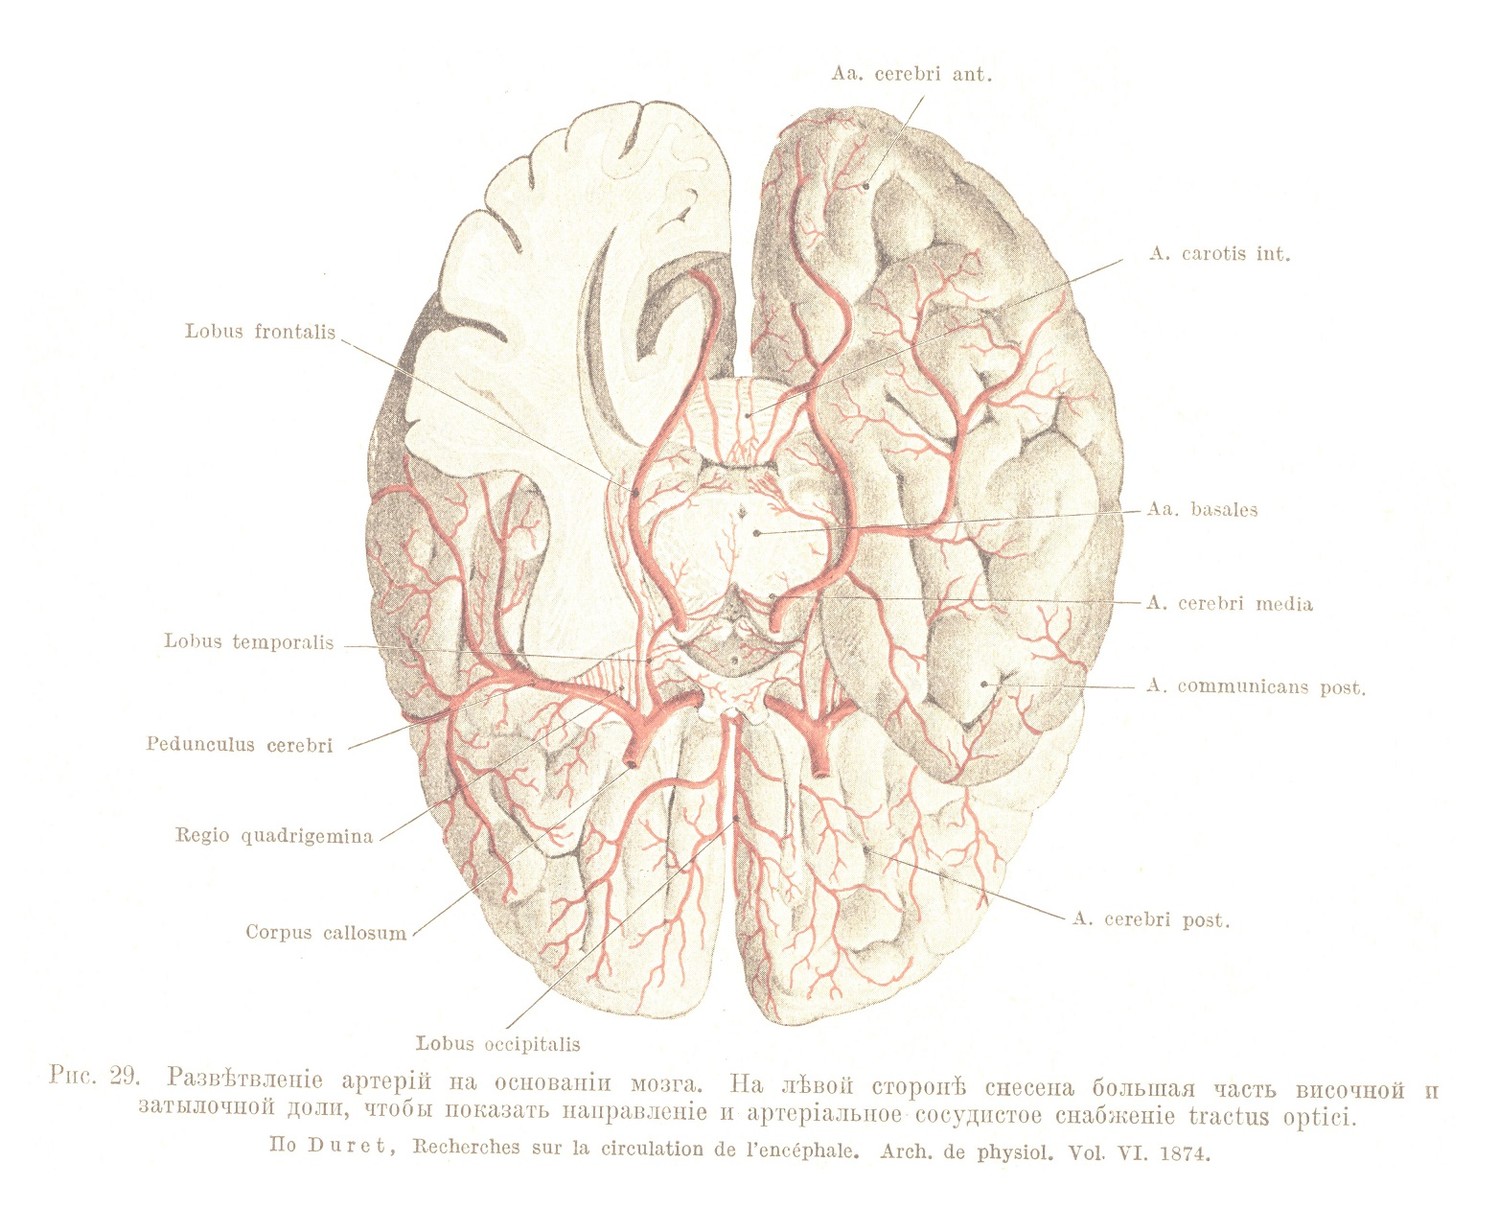 Развѣтвленіе артерій на основаніи мозга. На лѣвой сторонѣ снесена большая часть височной п затылочной доли, чтобы показать направленіе и артеріальное сосудистое снабженіе tractus optici.